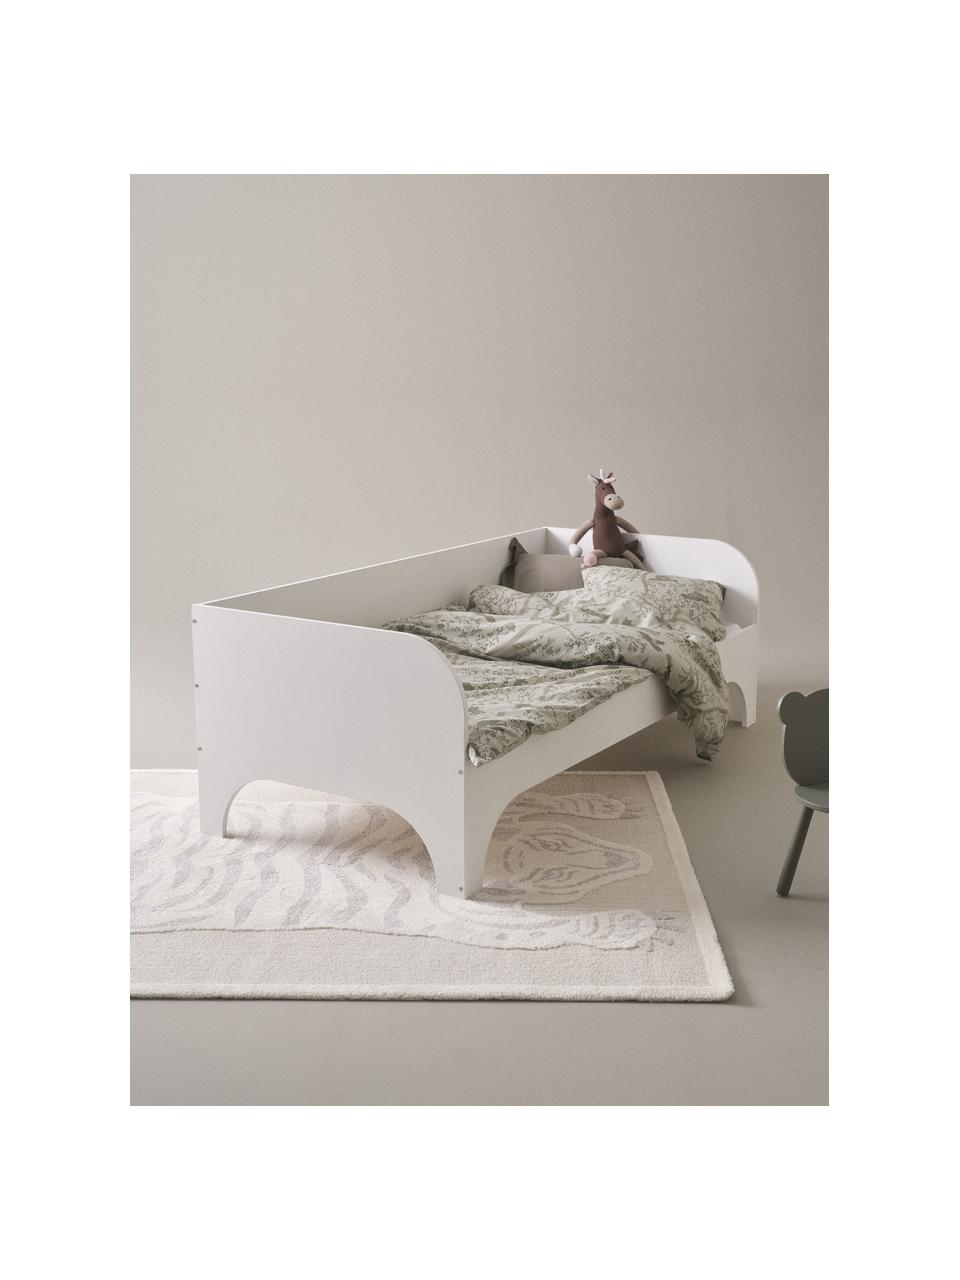 Dřevěná dětská postel Phant, 90 x 200 cn, Dřevovláknitá deska střední hustoty (MDF), Dřevo, lakováno bílou barvou, Š 90 cm, D 200 cm